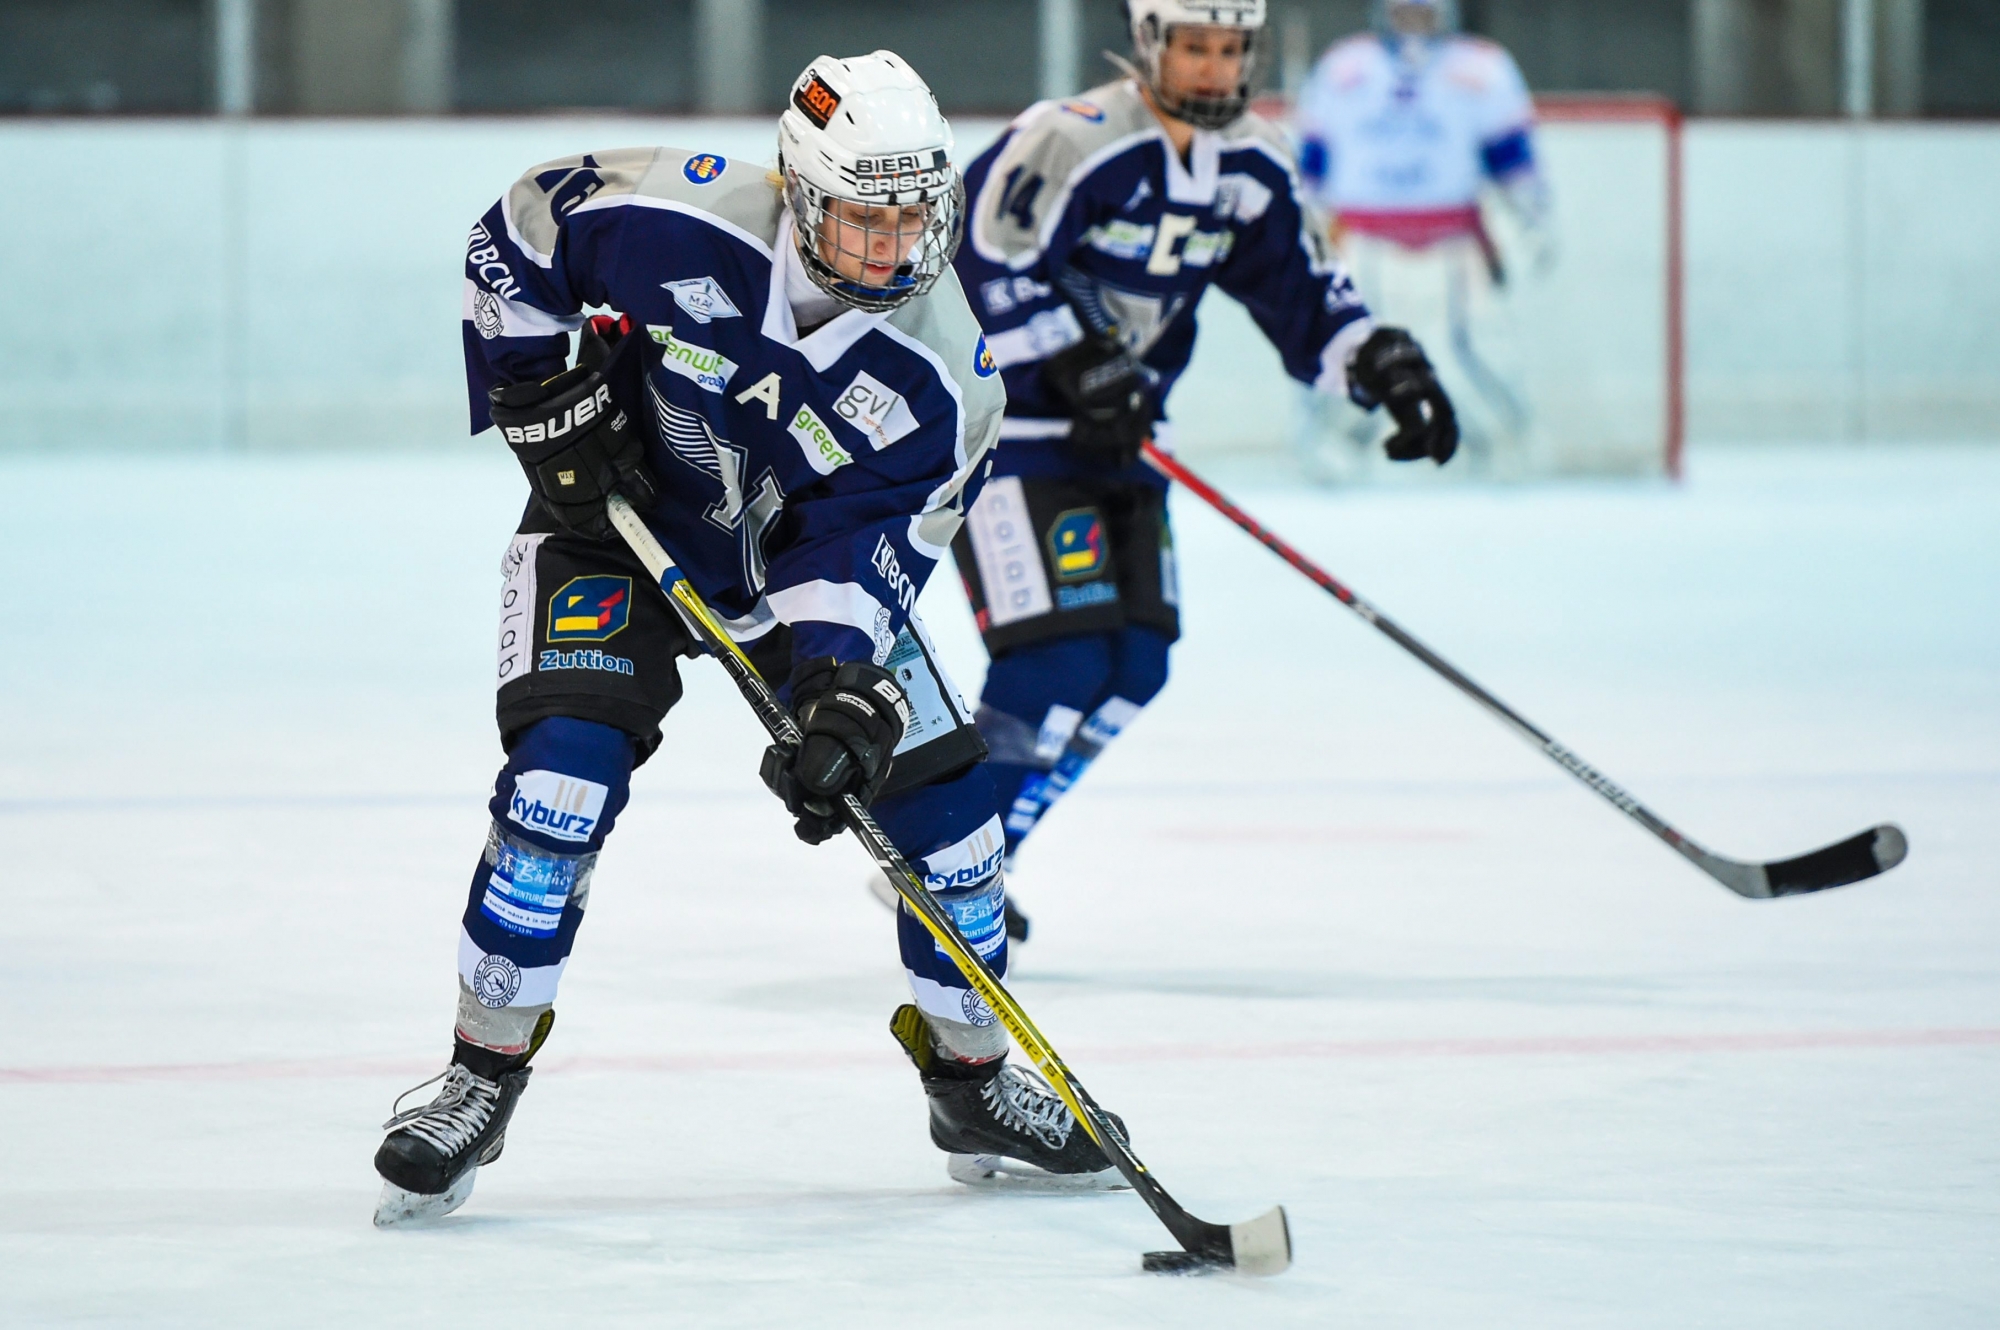 Hockey sur glace feminin.  Neuchatel Hockey Academy - Zurich
Camille Huwiler

NEUCHATEL 19/11/2017
Photo: Christian Galley HOCKEY SUR GLACE FEMININ